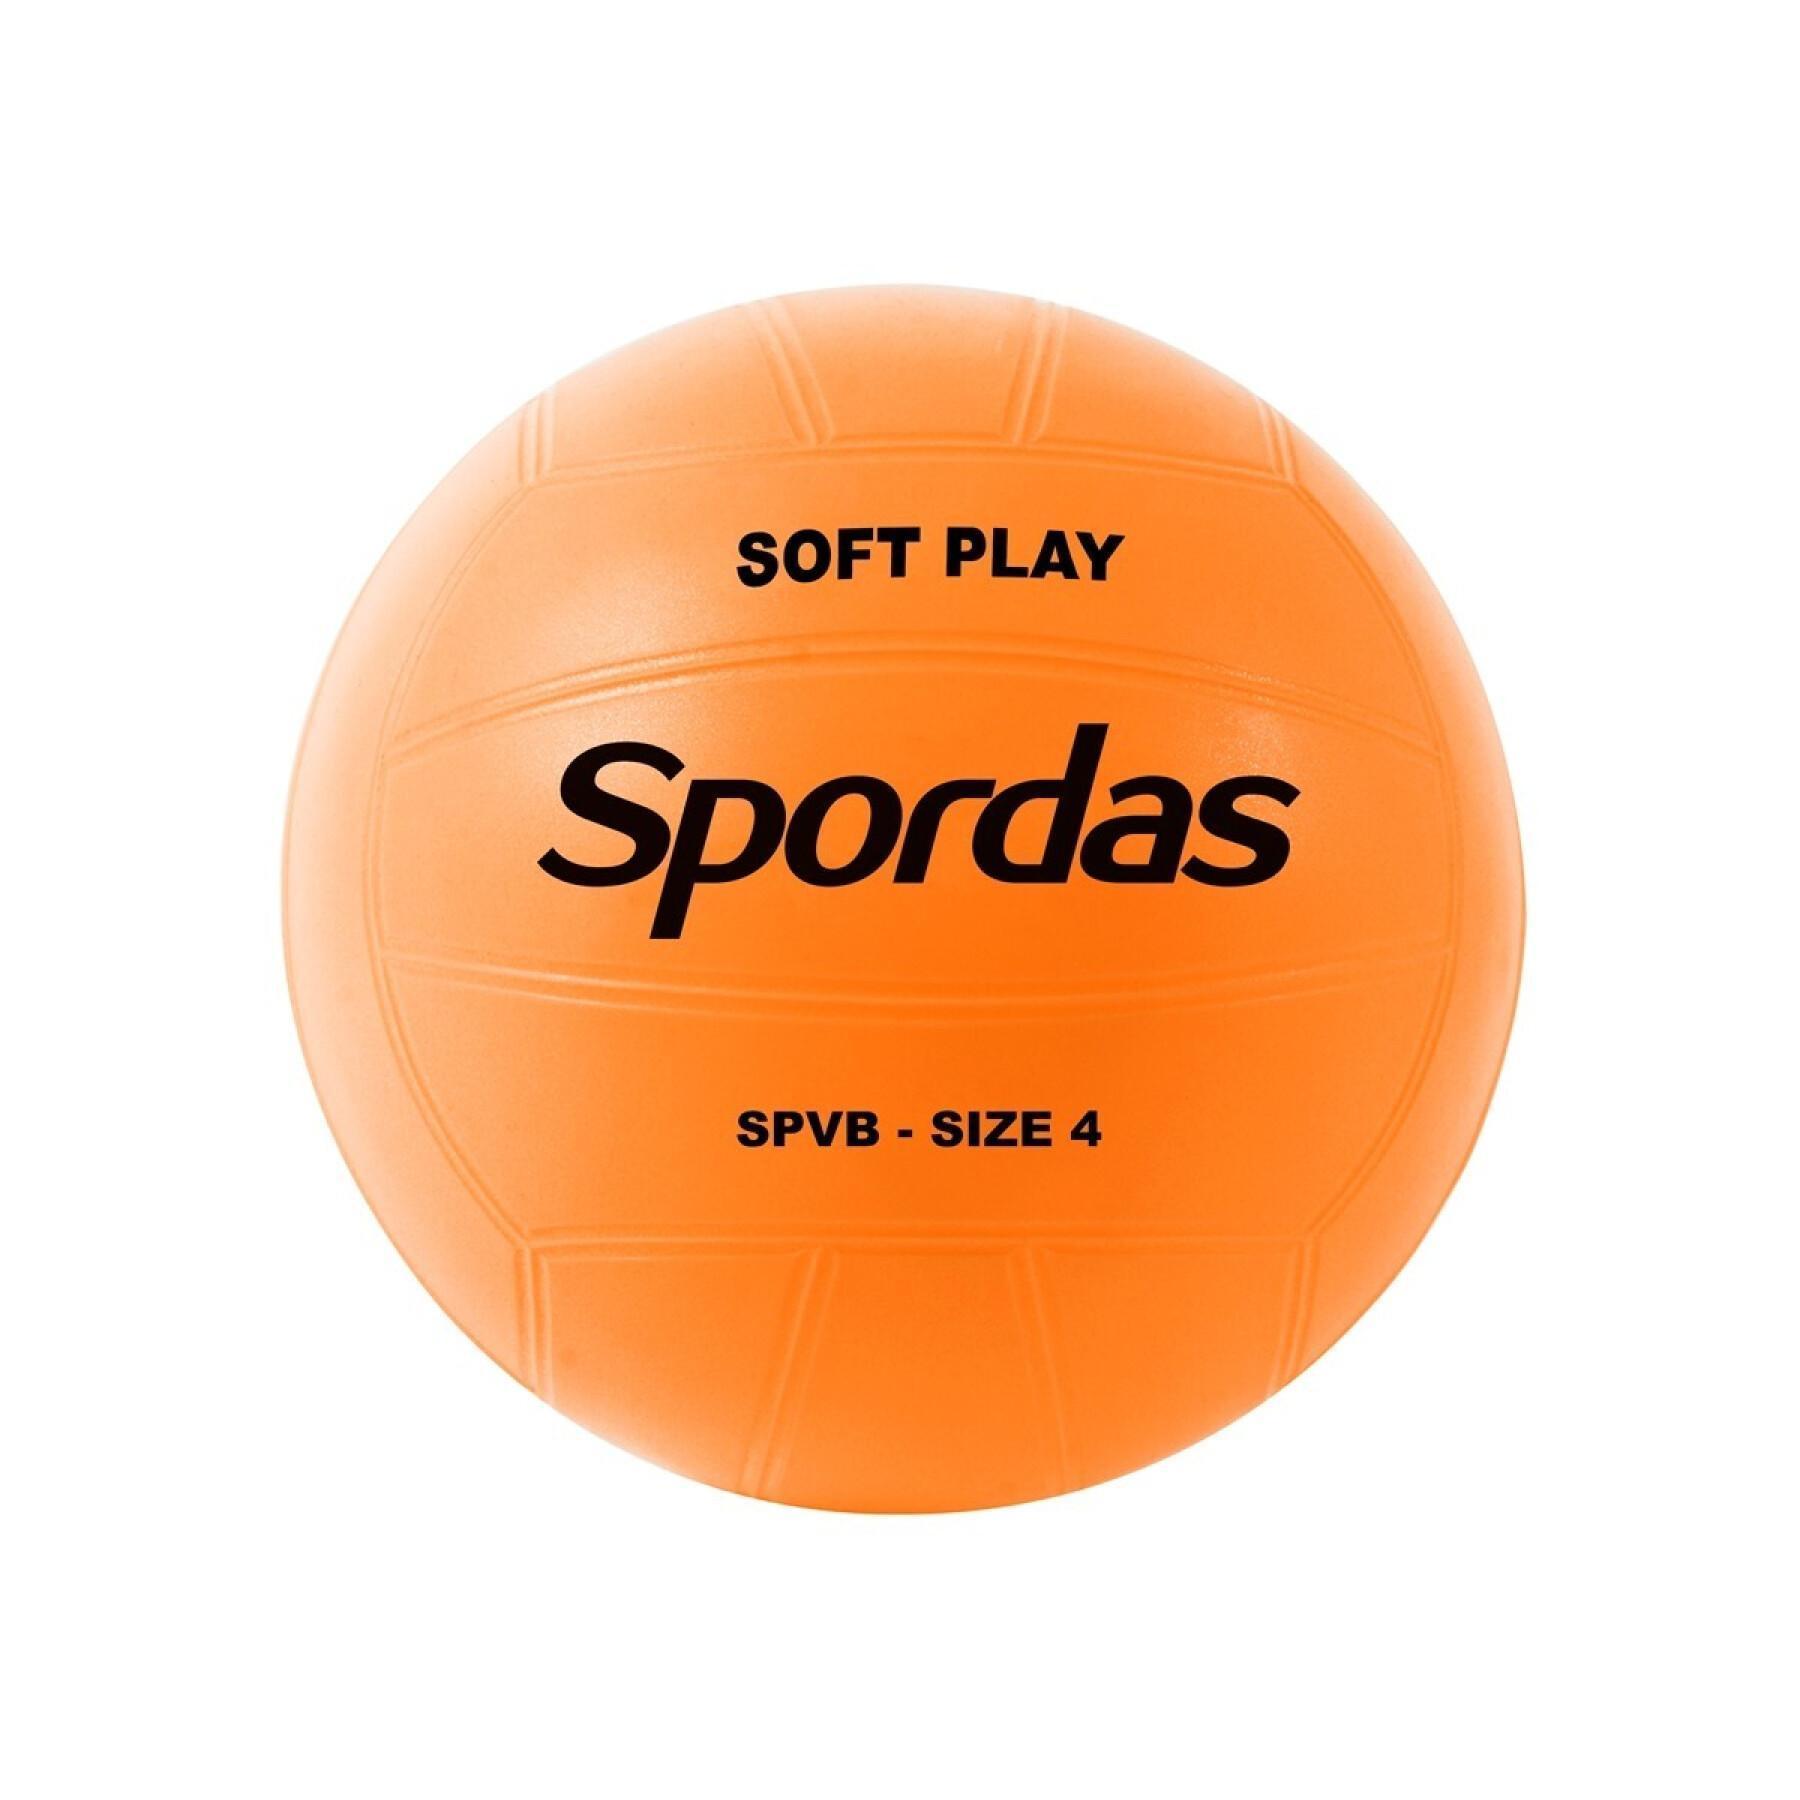 Children's volleyball Spordas Soft Play